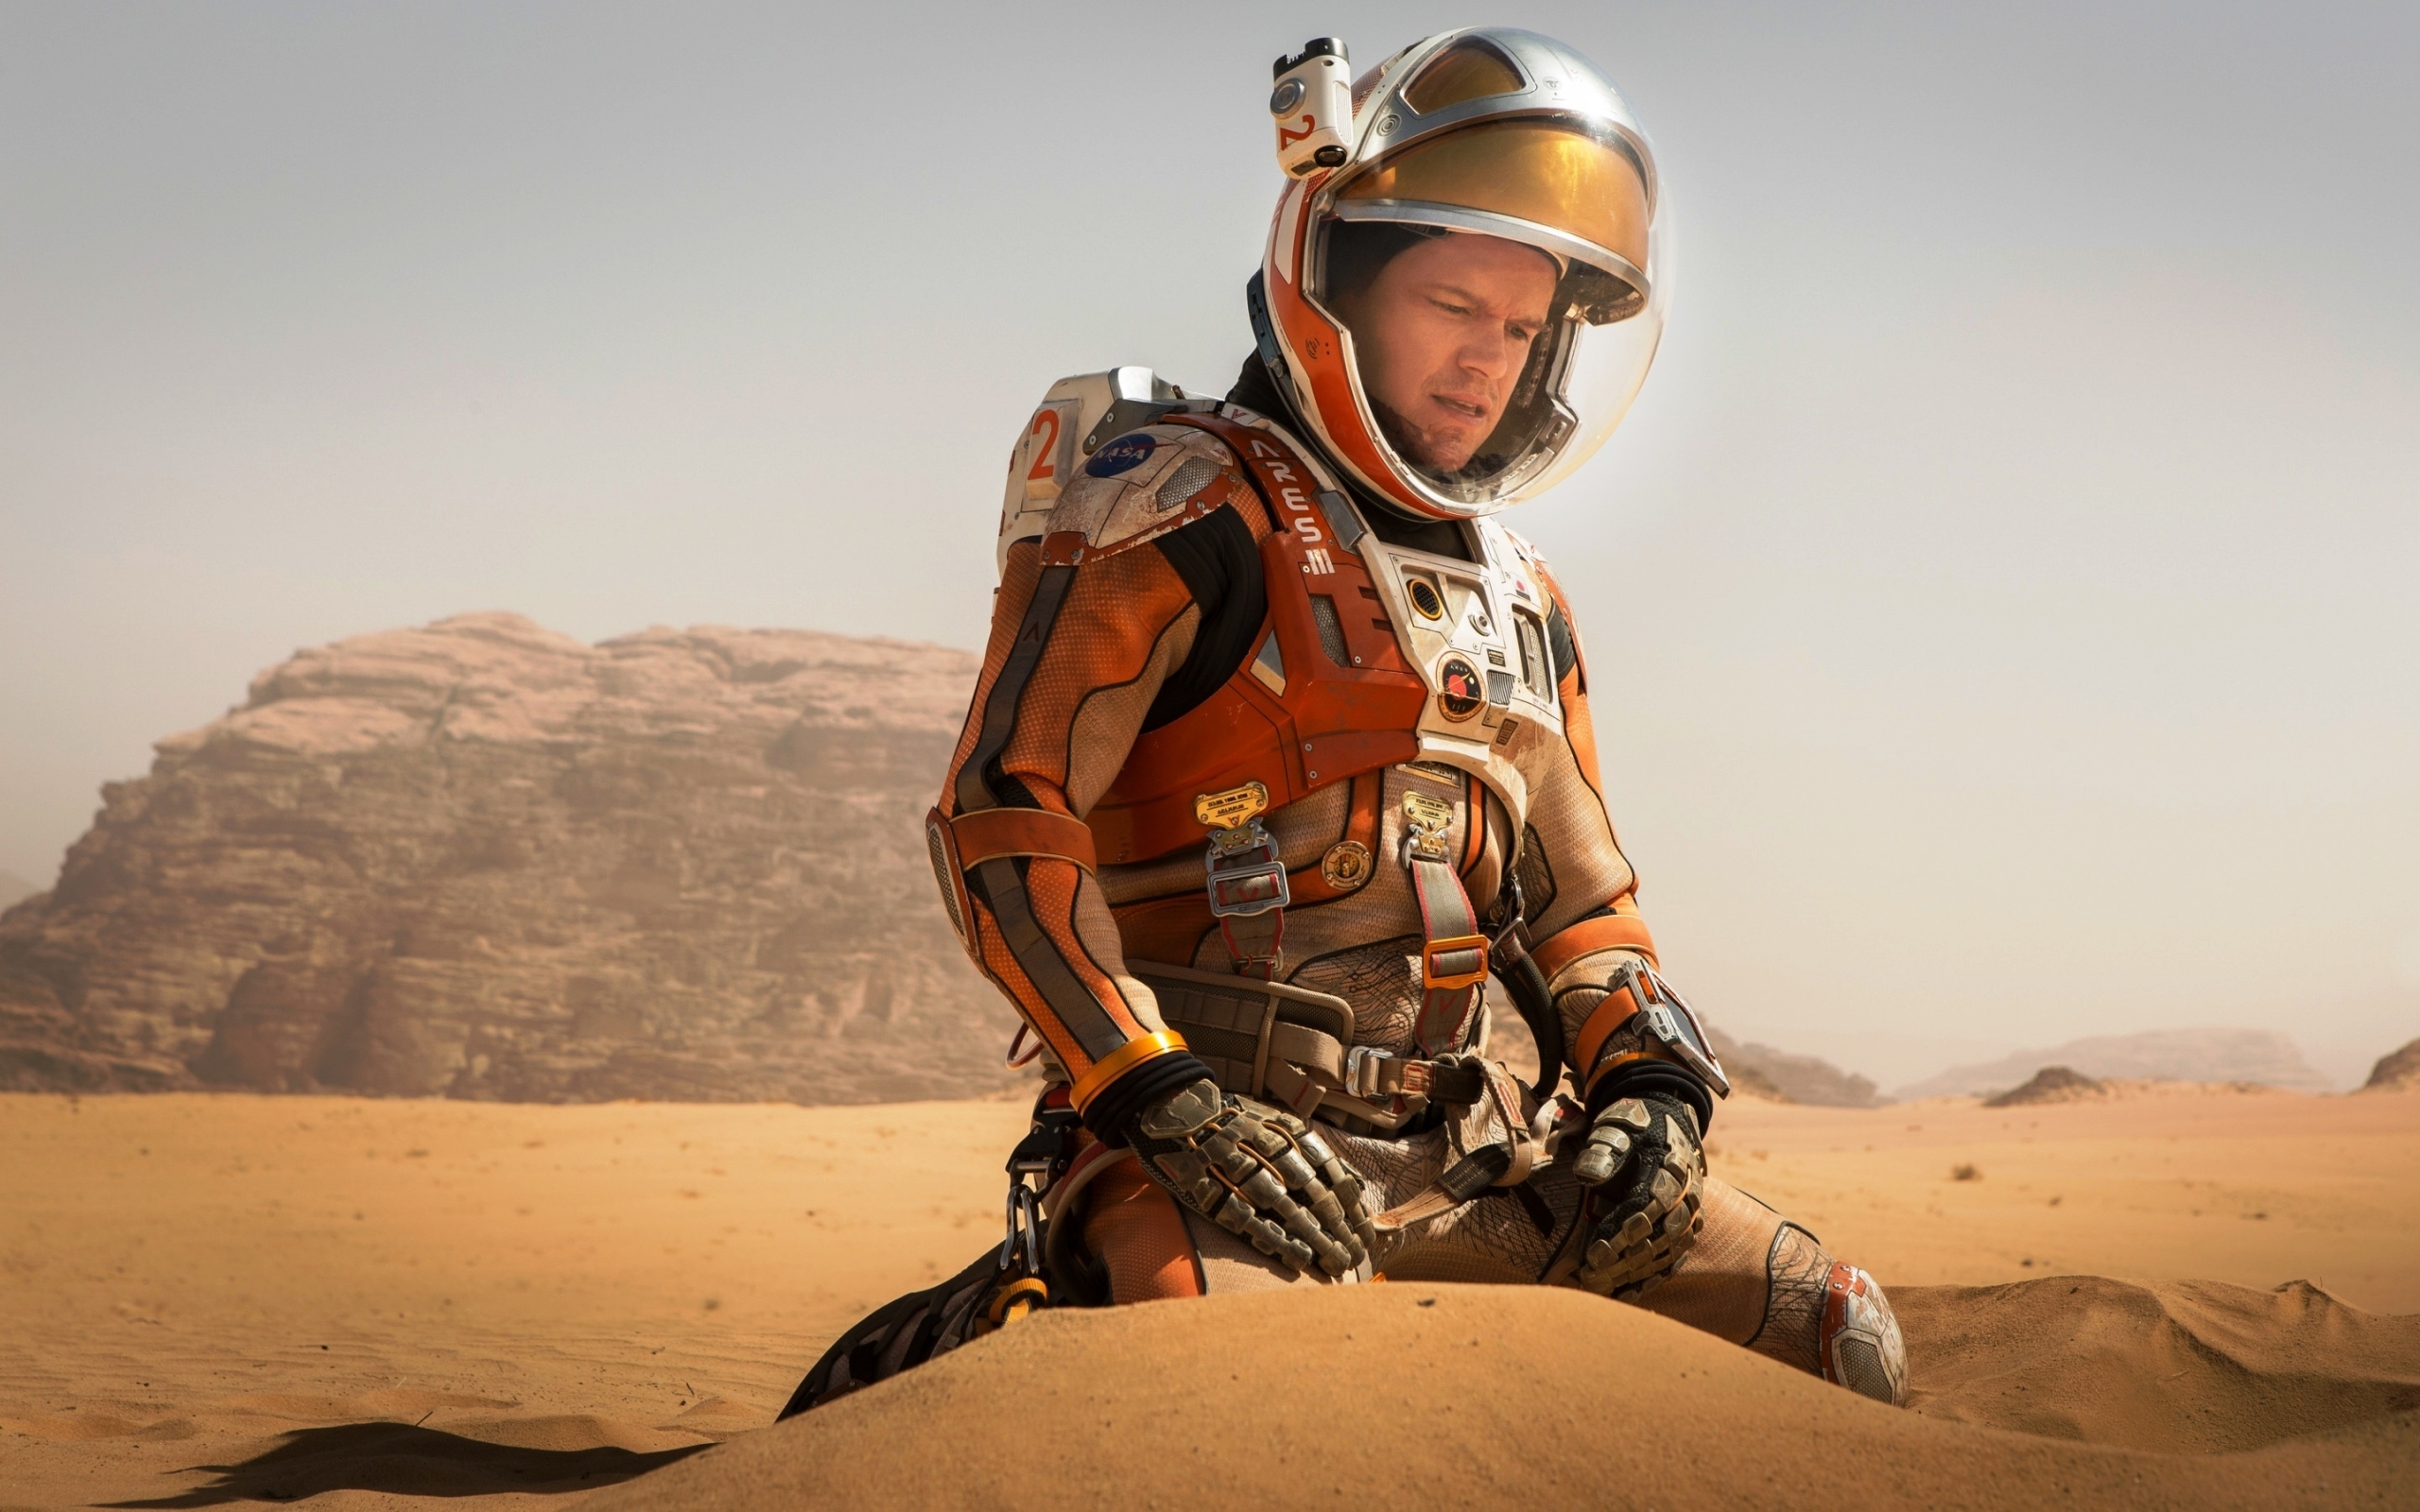 The Martian Matt Damon for 2560 x 1600 widescreen resolution